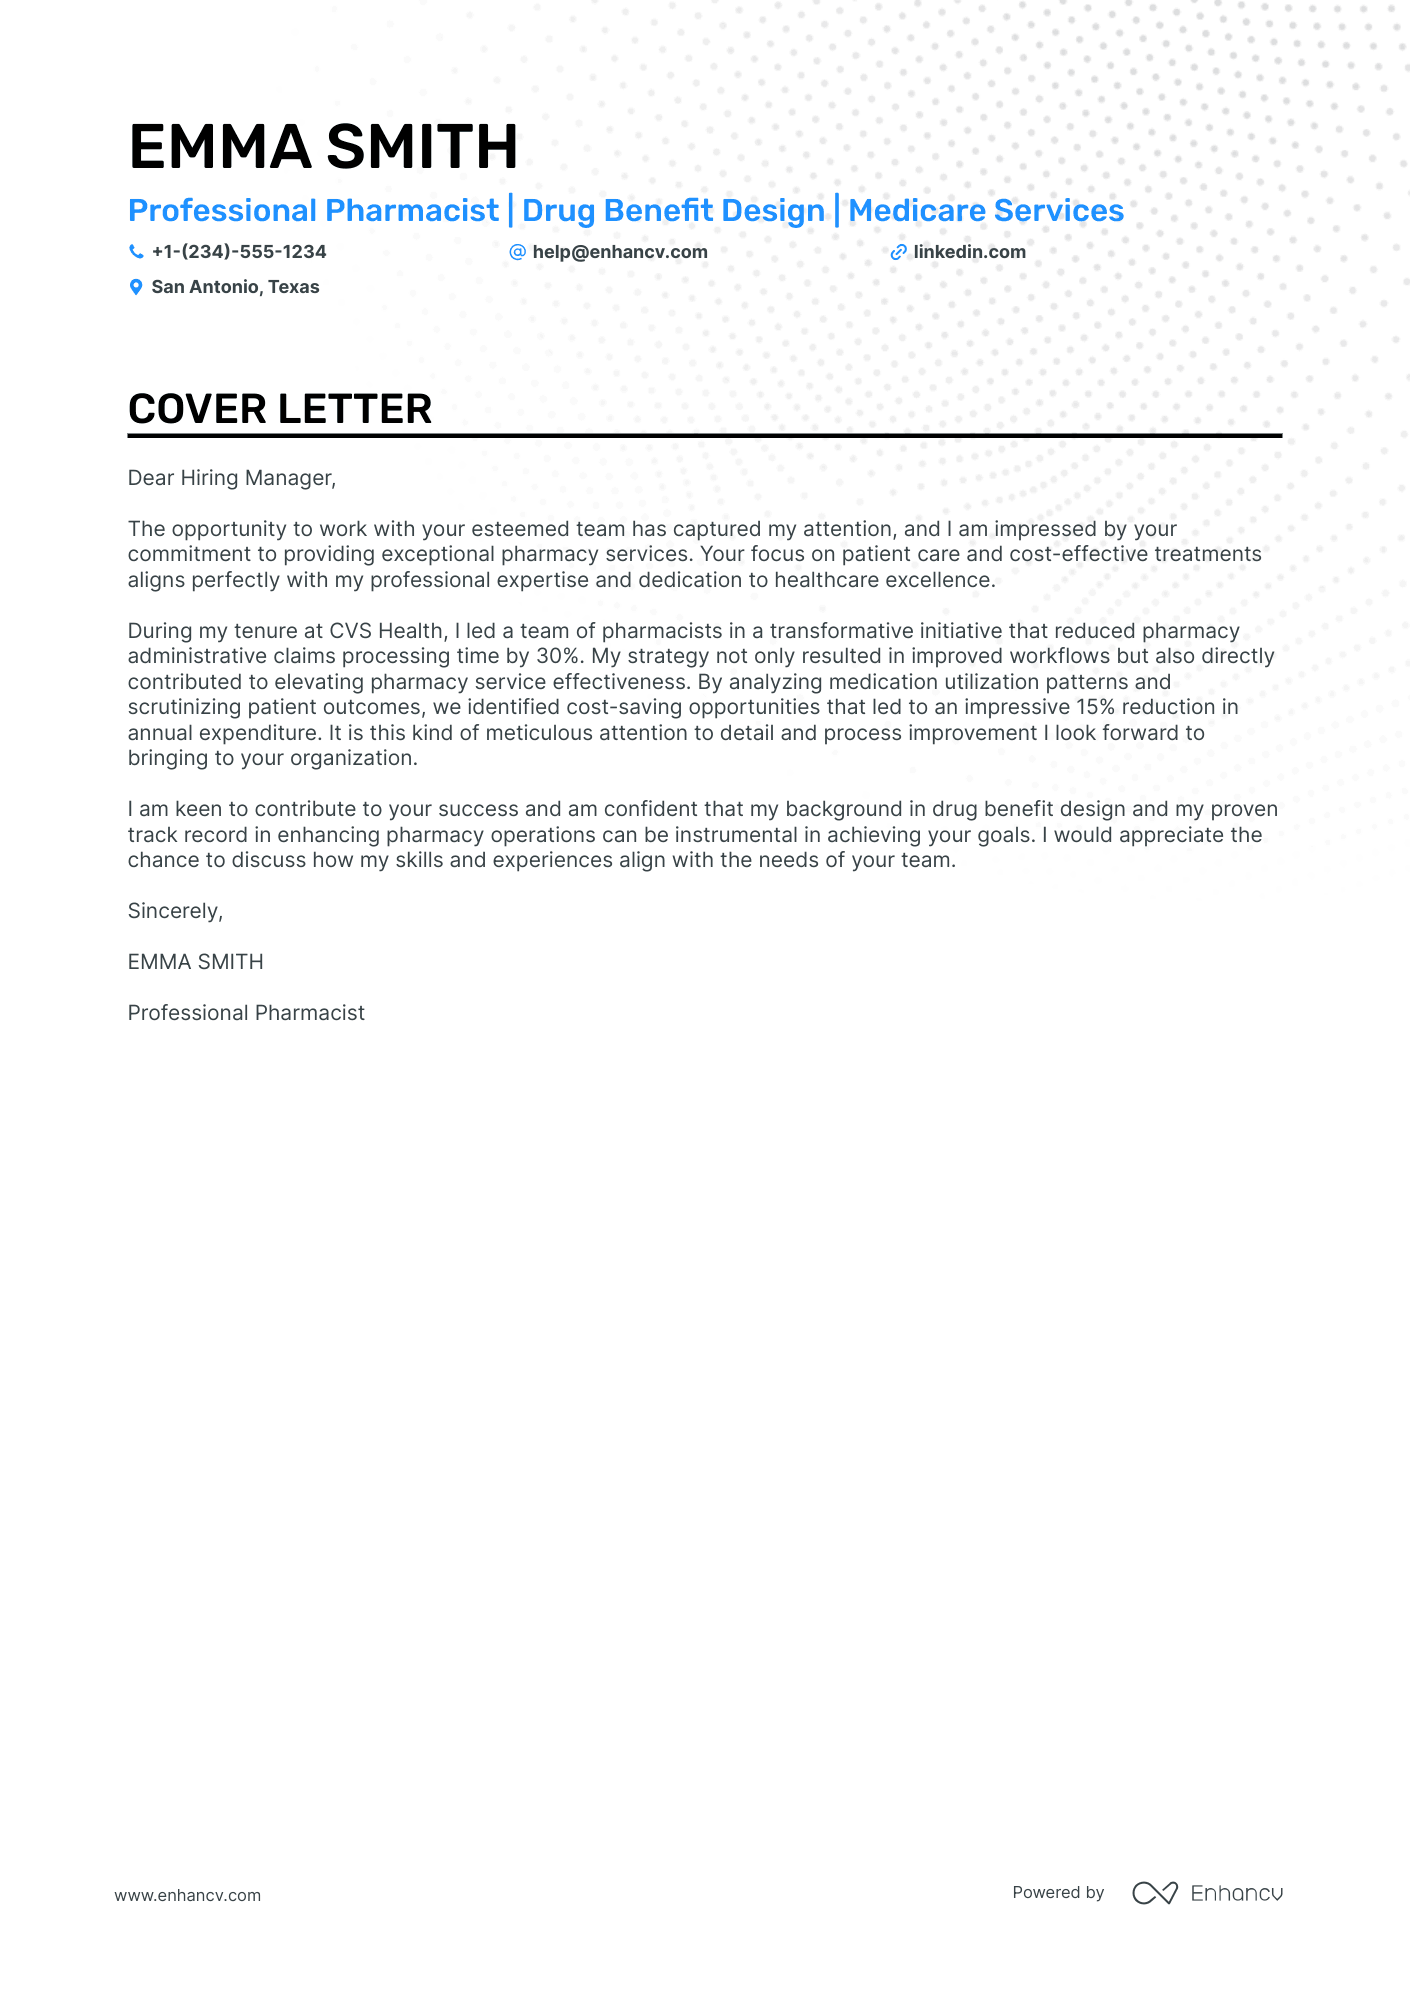 pharmacist cover letter sample